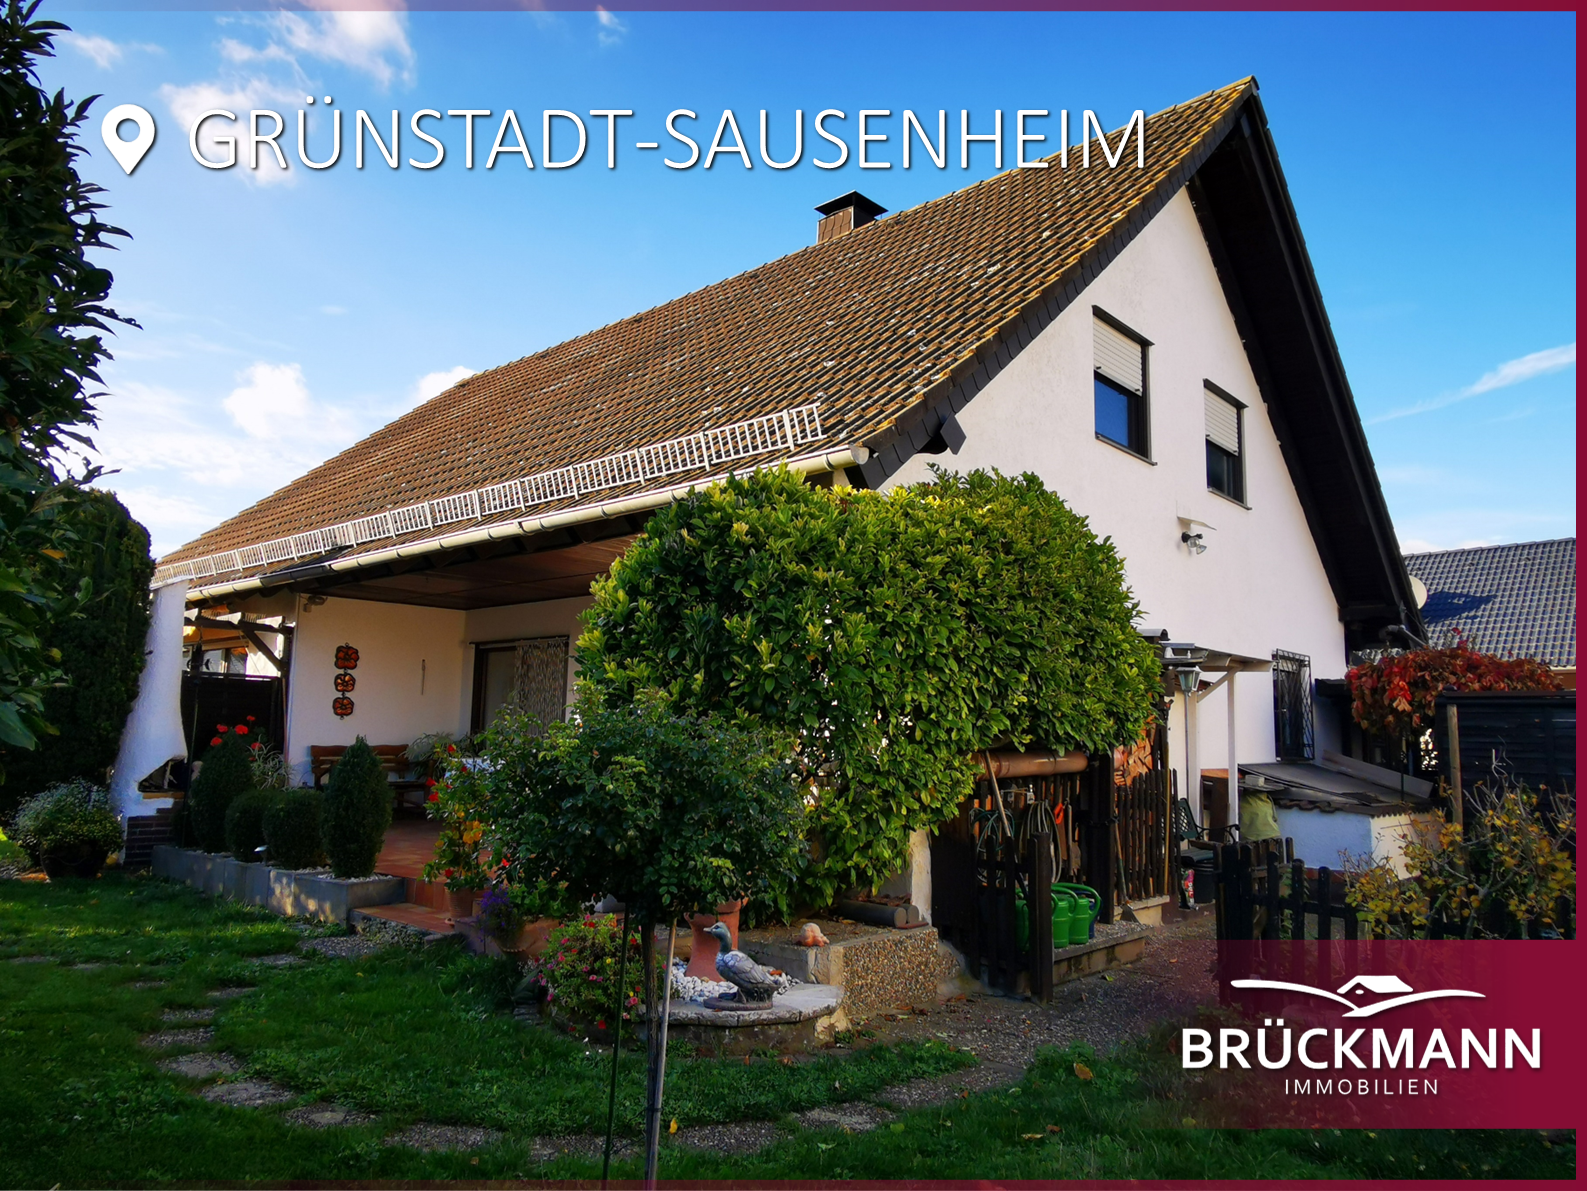 Ihr neues Zuhause mit Garten, Sauna und weiterem Ausbaupotential in begehrter Lage!, 67269 Grünstadt-Sausenheim, Einfamilienhaus